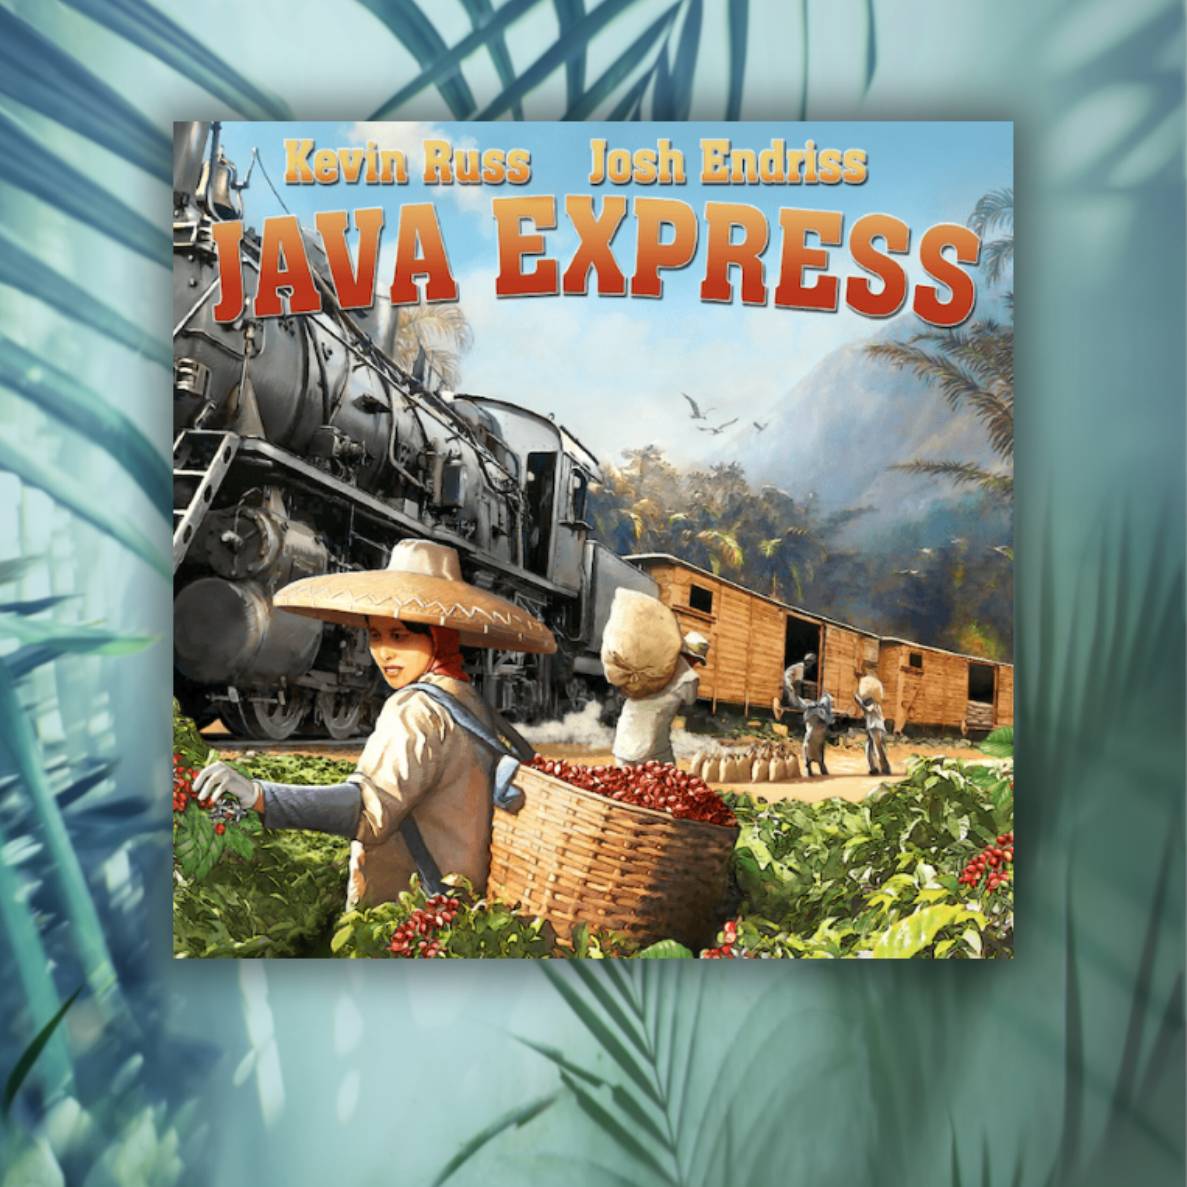 okładka gry java express z pociągiem na okładce i plantatorami kawy